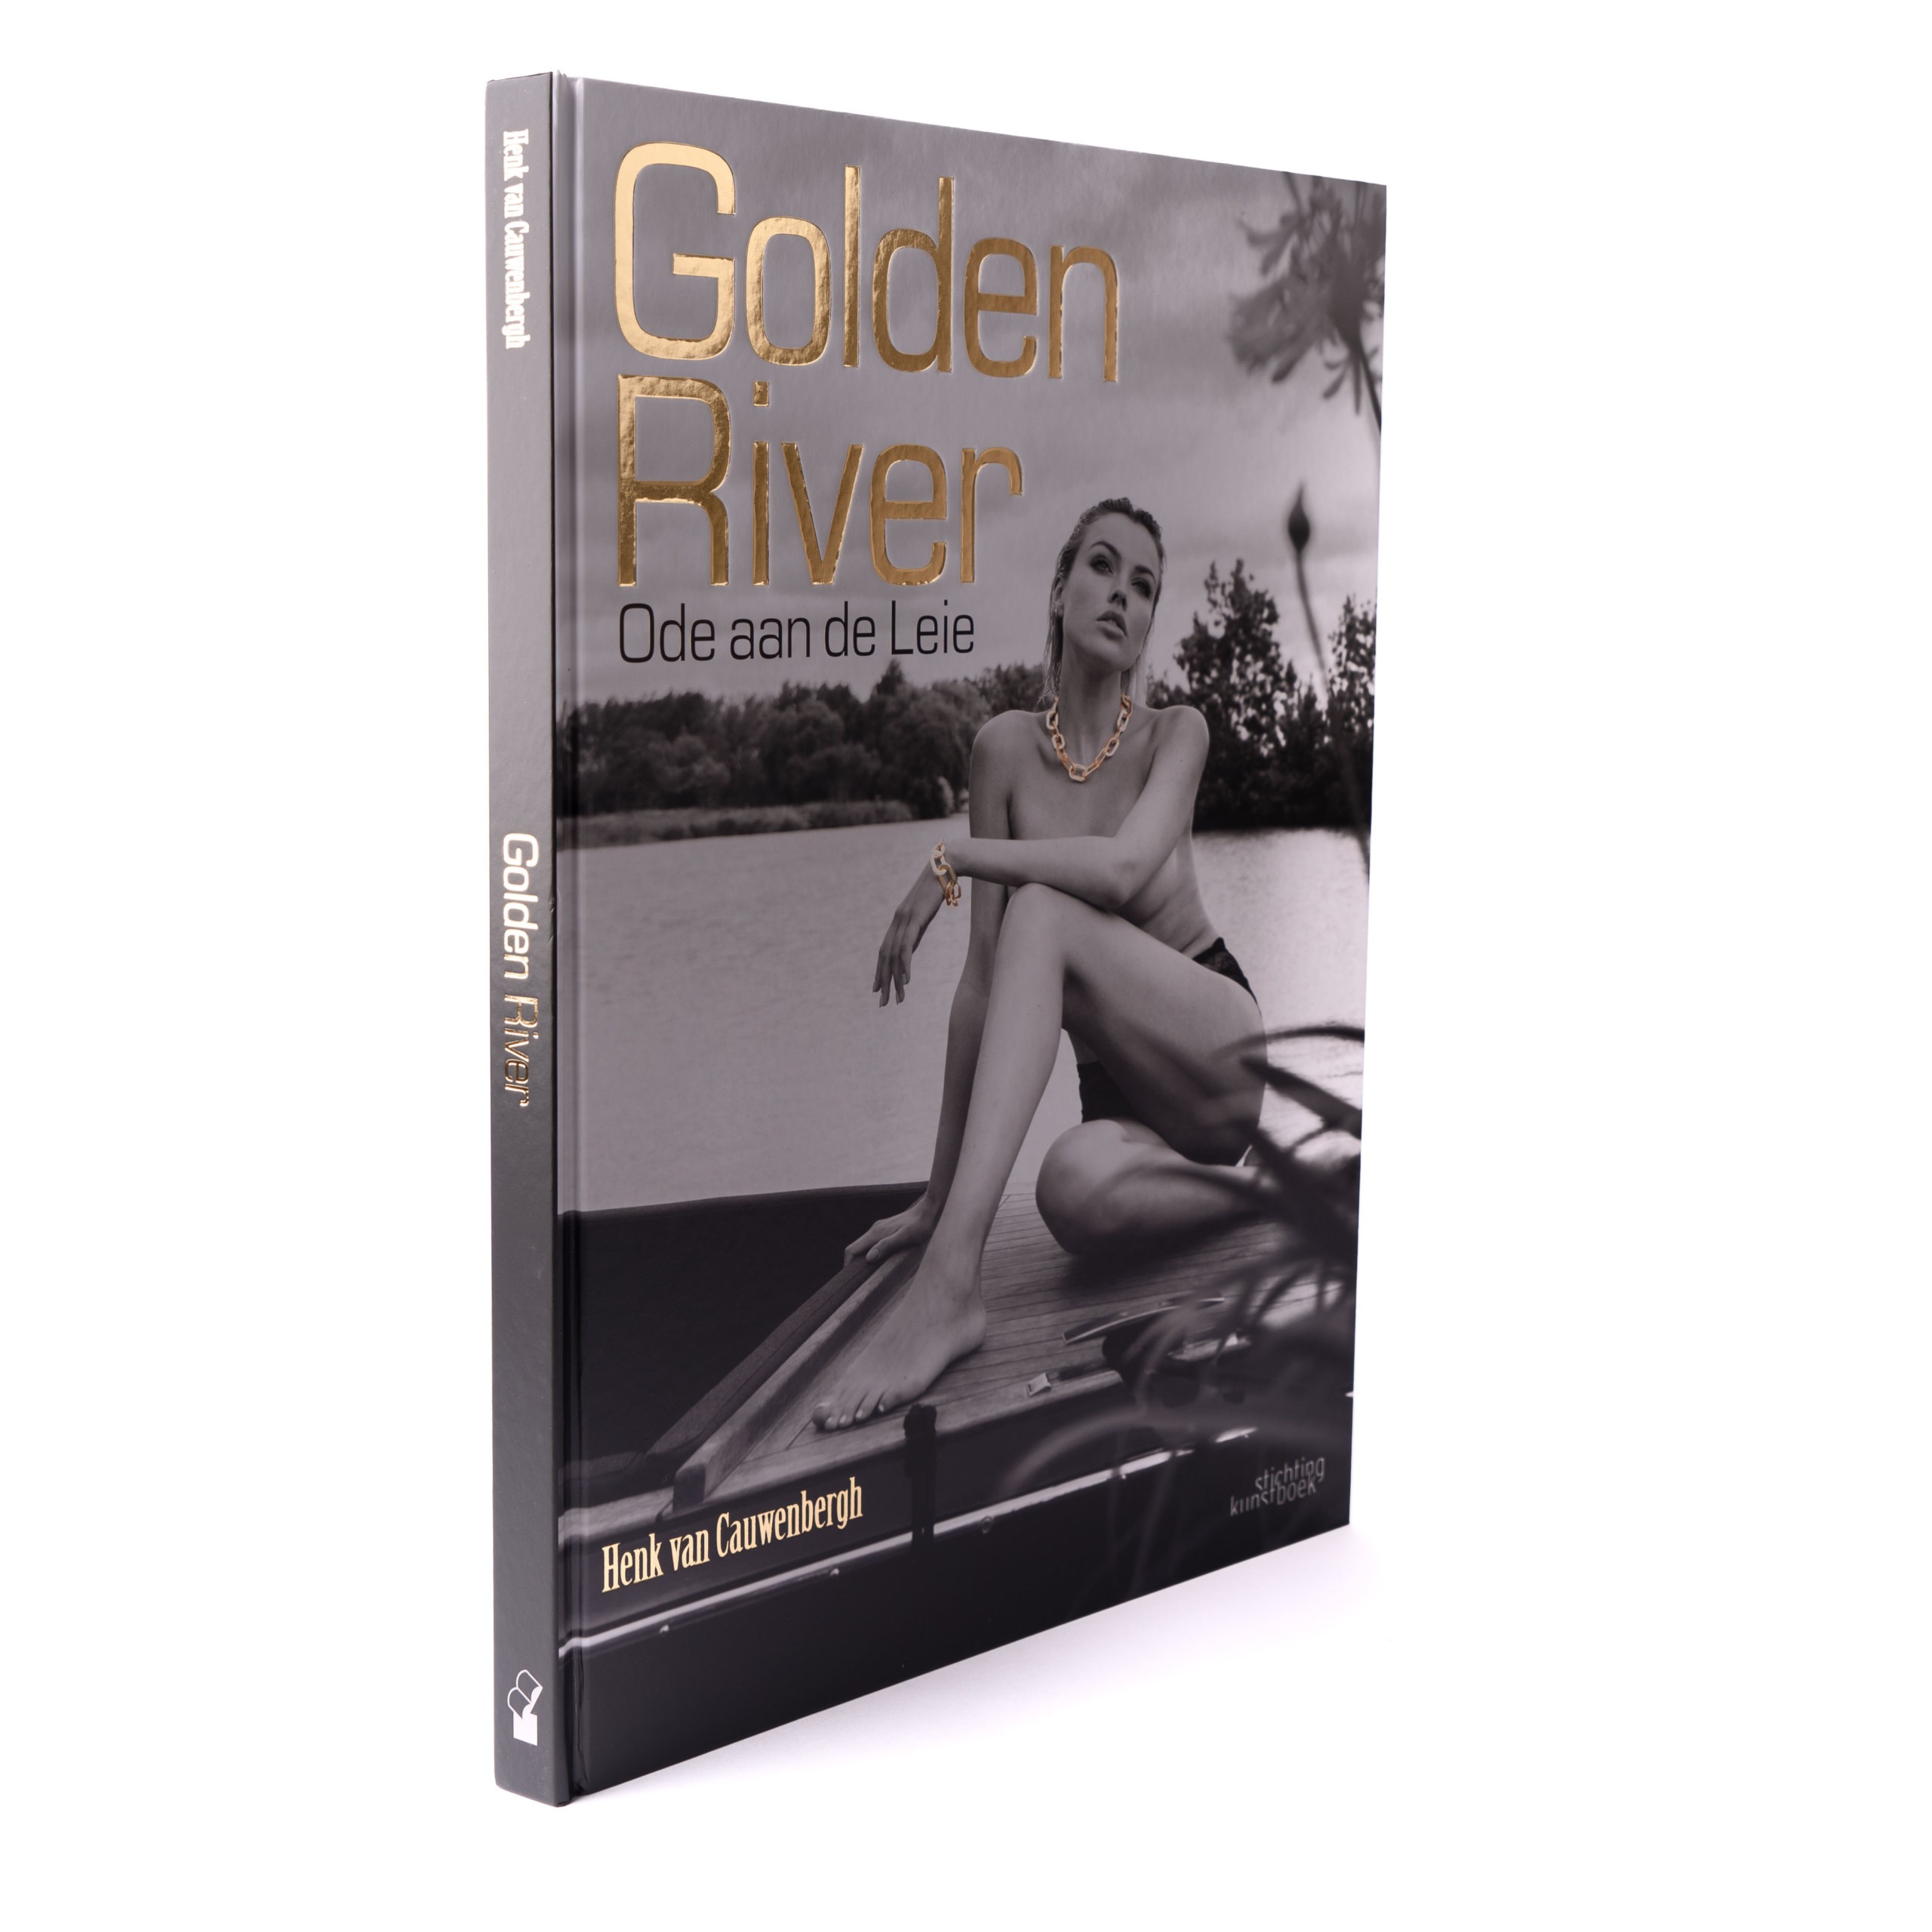 Golden River boek van Henk van Cauwenbergh